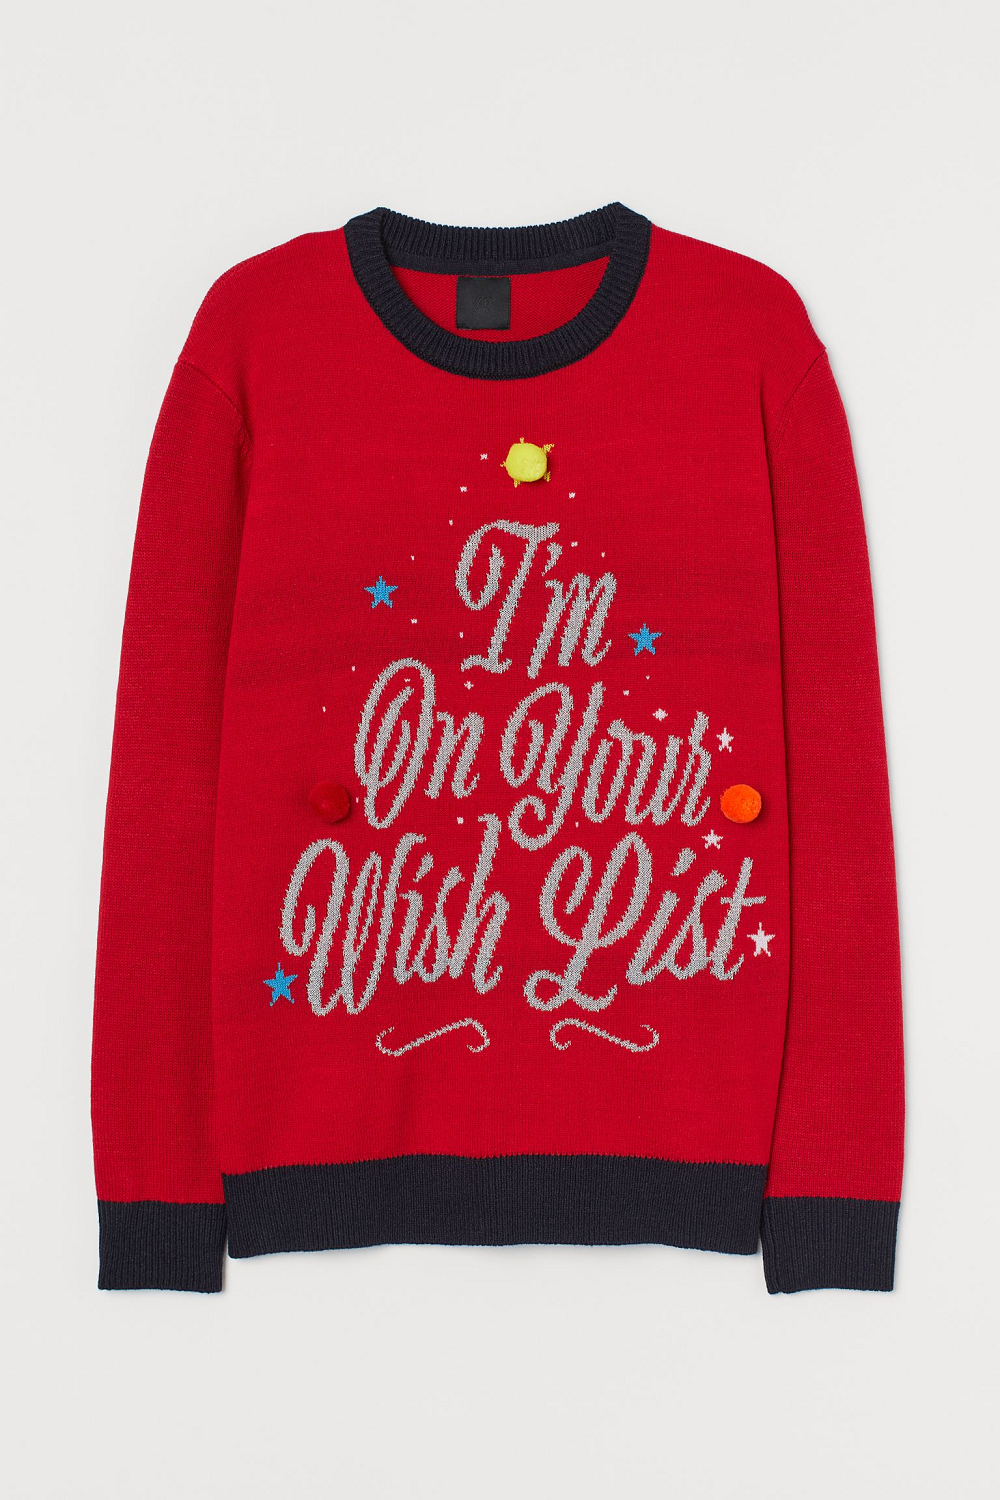 Ugly Christmas Sweater H&M božićni puloveri Božić 2020.